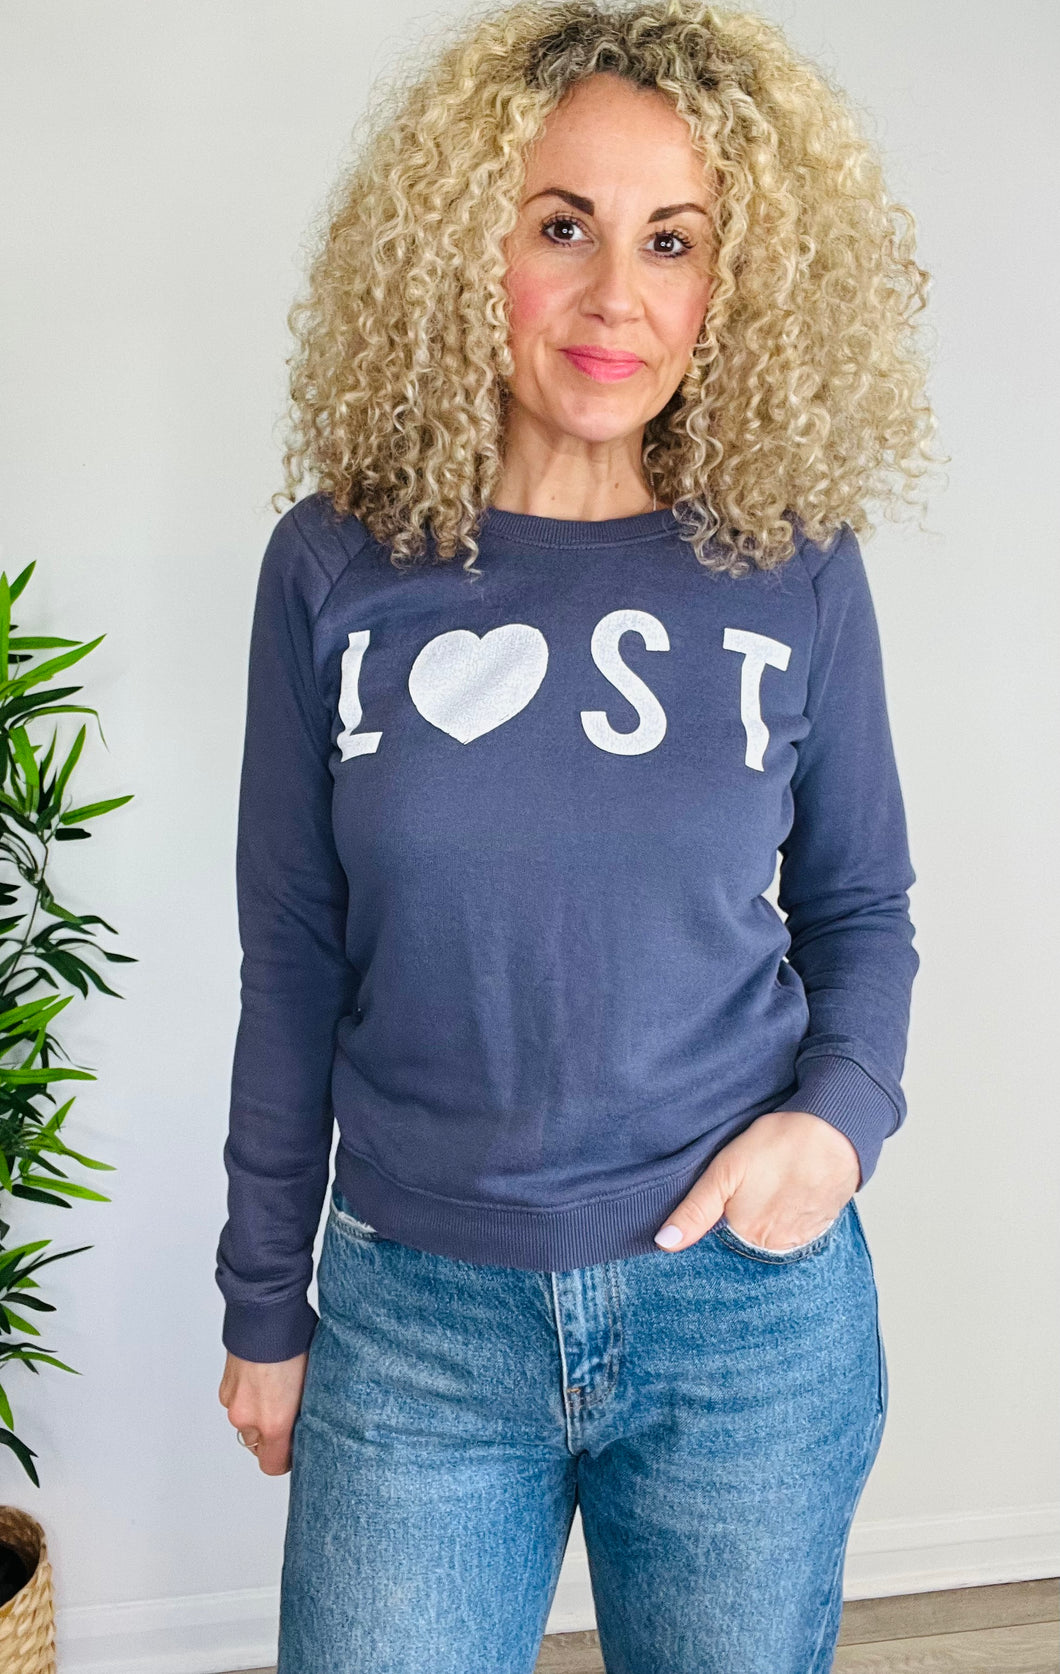 Lost Sweatshirt - Size XS